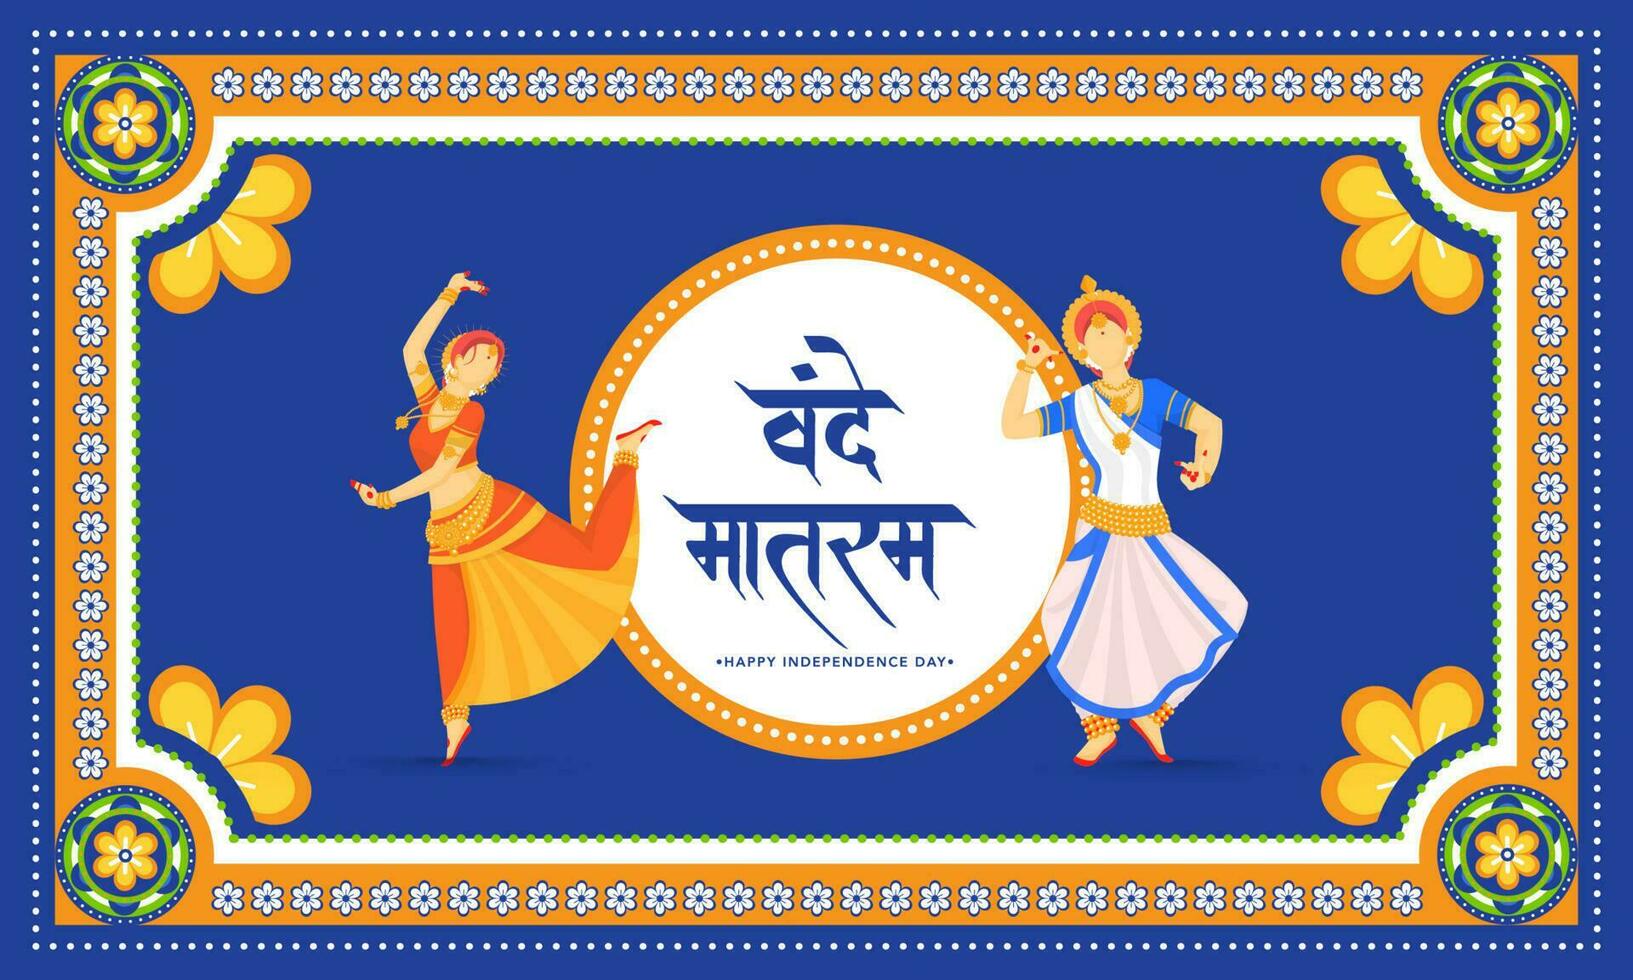 Vande mataram Hindi Text mit gesichtslos klassisch weiblich Tänzer auf Kitsch Stil Hintergrund zum glücklich Unabhängigkeit Tag. vektor